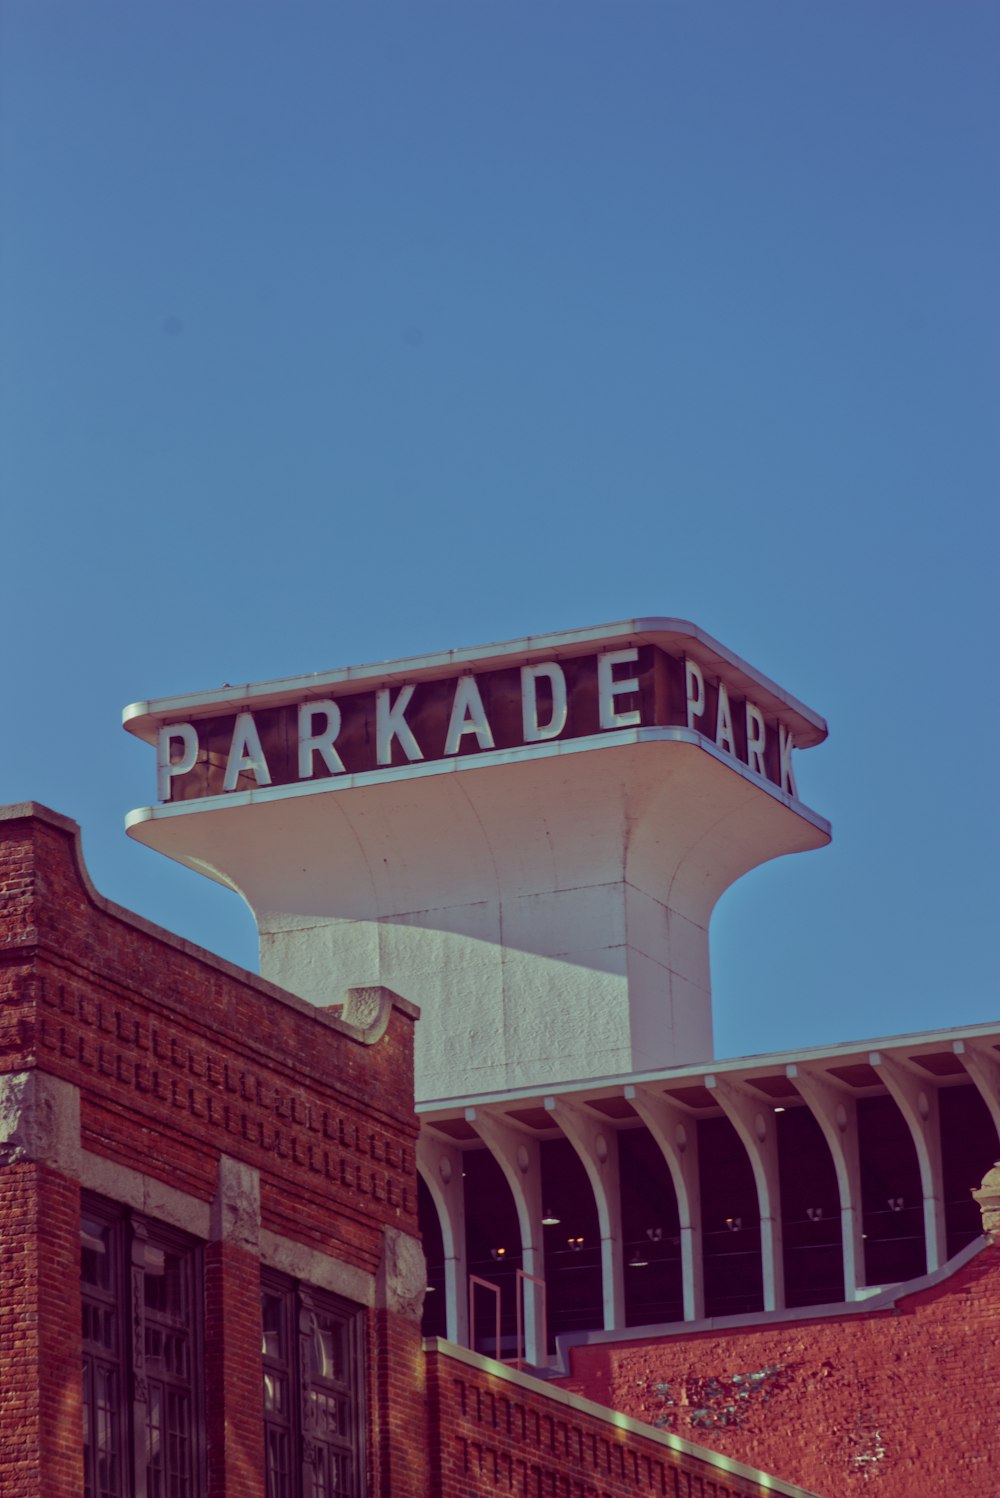 パーケードパークと書かれた看板のあるレンガ造りの建物